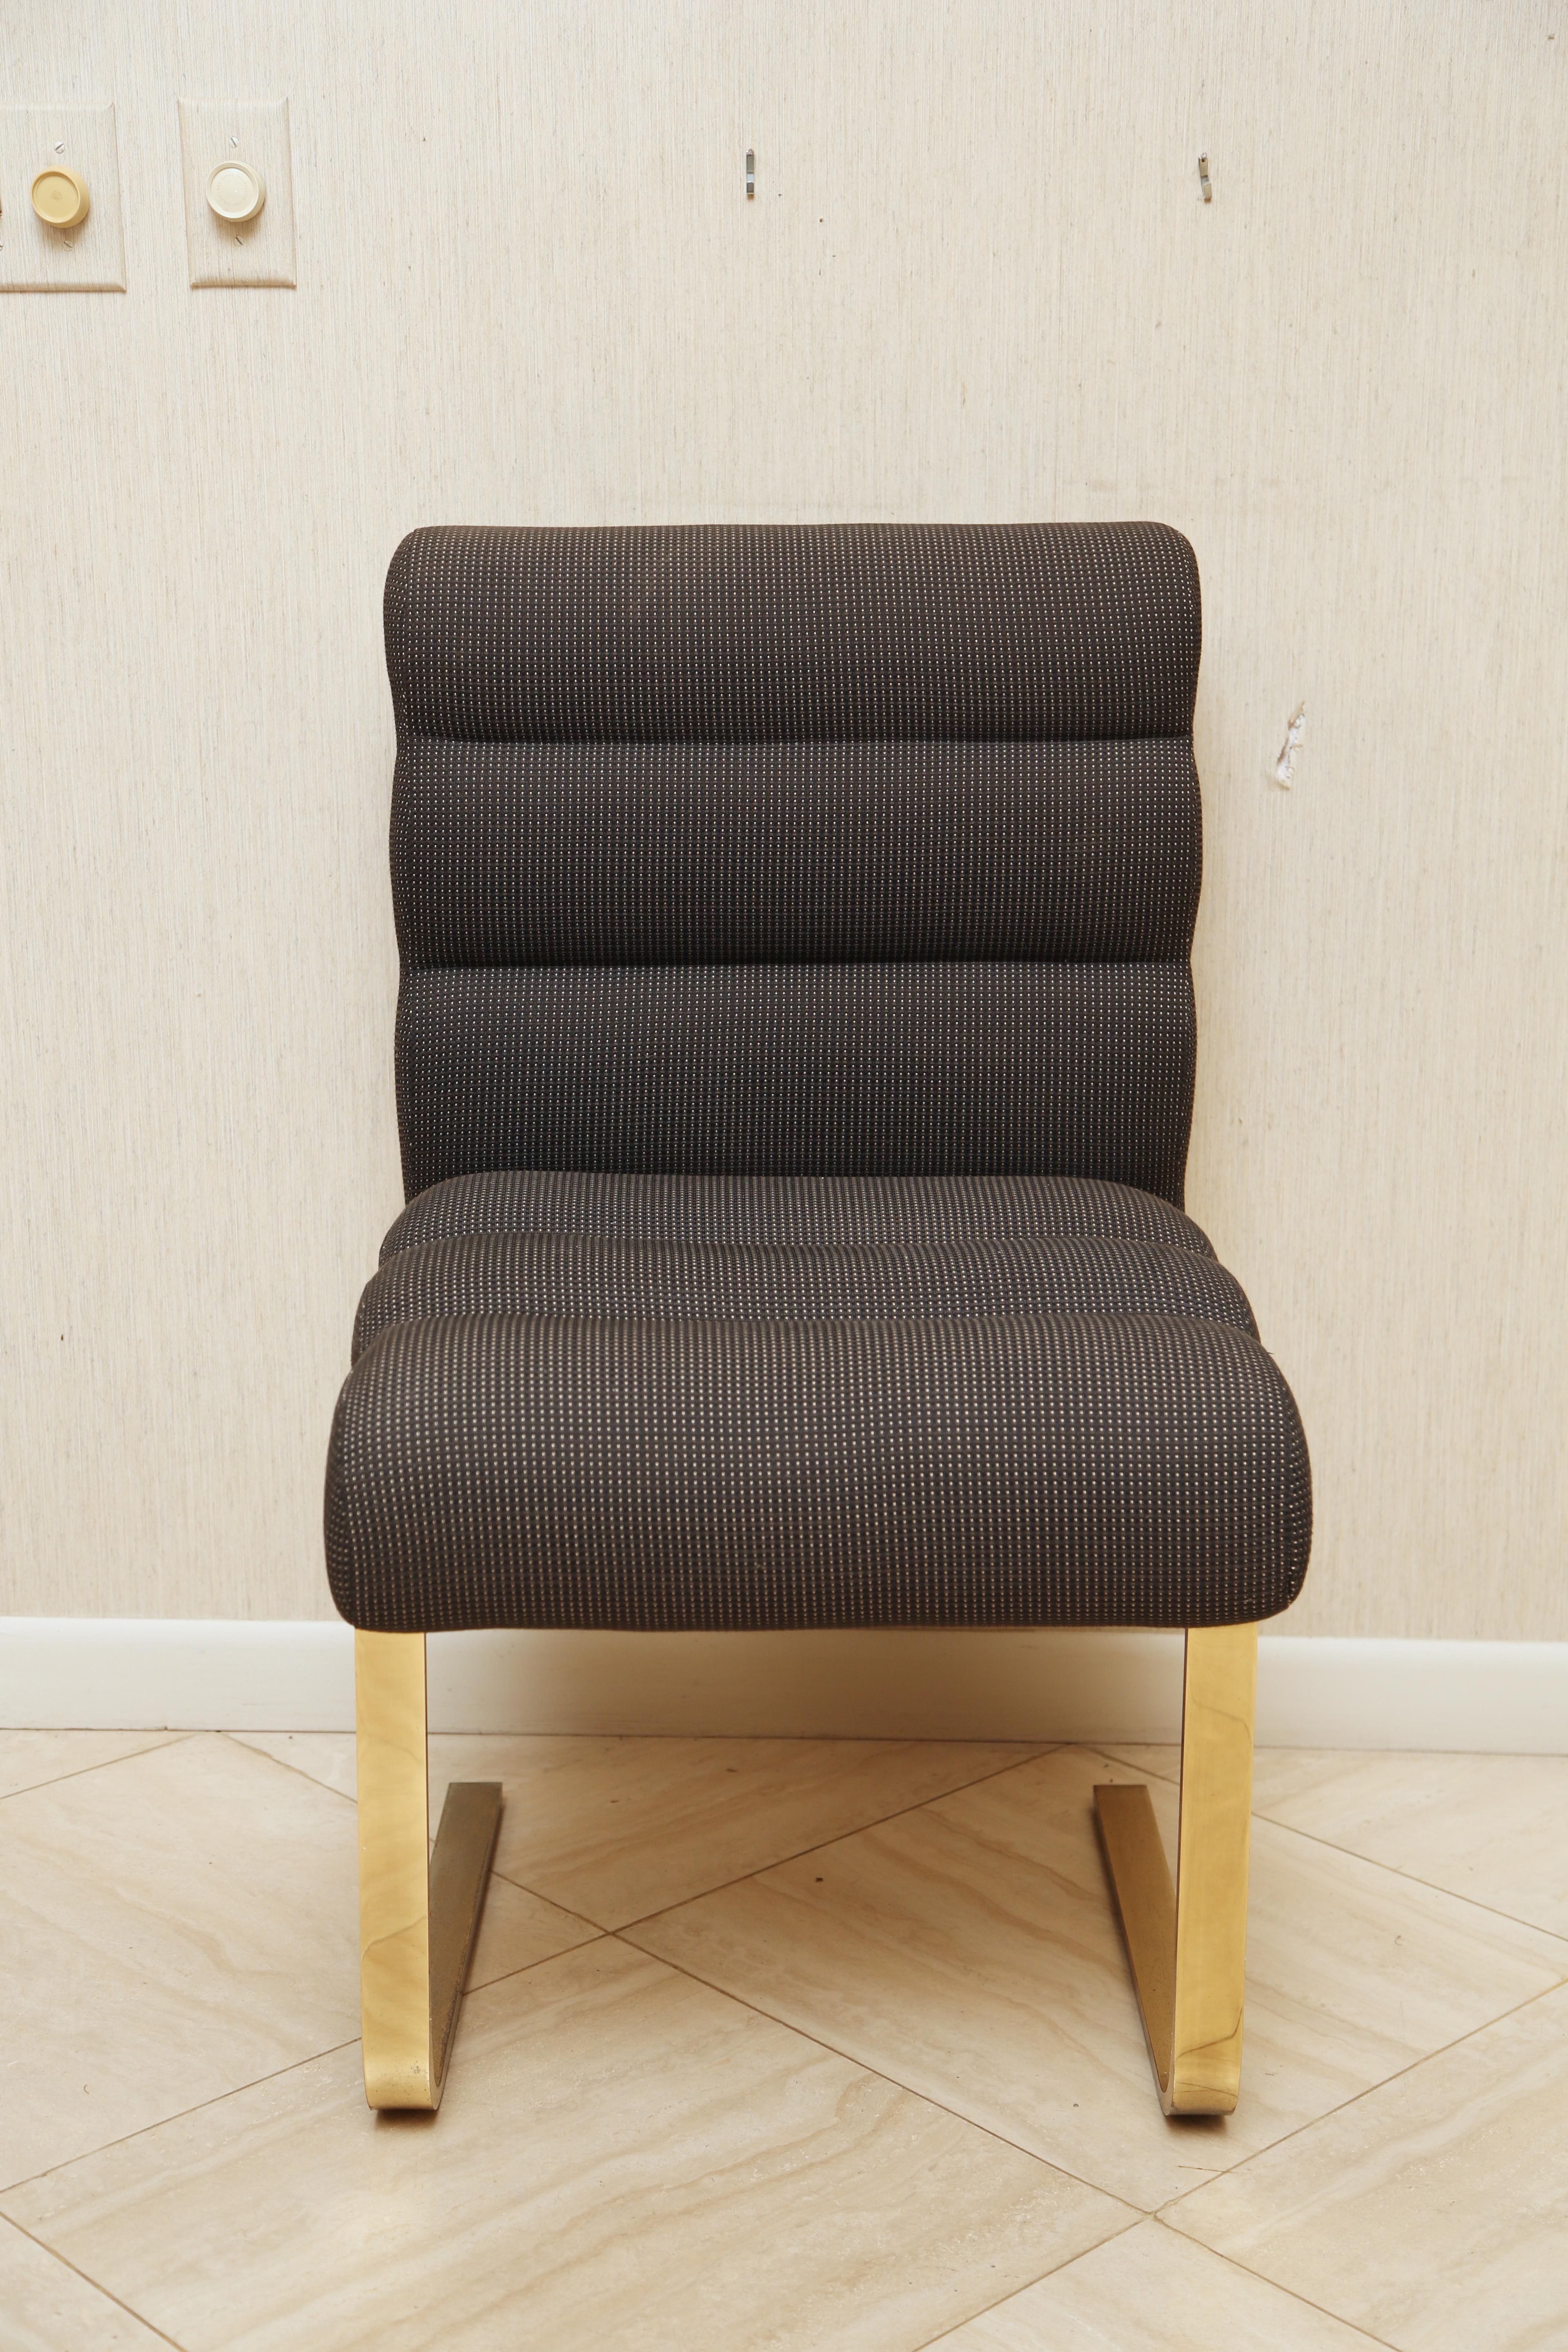 Bestehend aus zwei Sesseln und vier Beistellstühlen mit originaler anthrazitfarbener Polsterung, die auf freitragenden Beinen aus Messing stehen. Diese sind selten in goldfarbenem Metall zu finden.